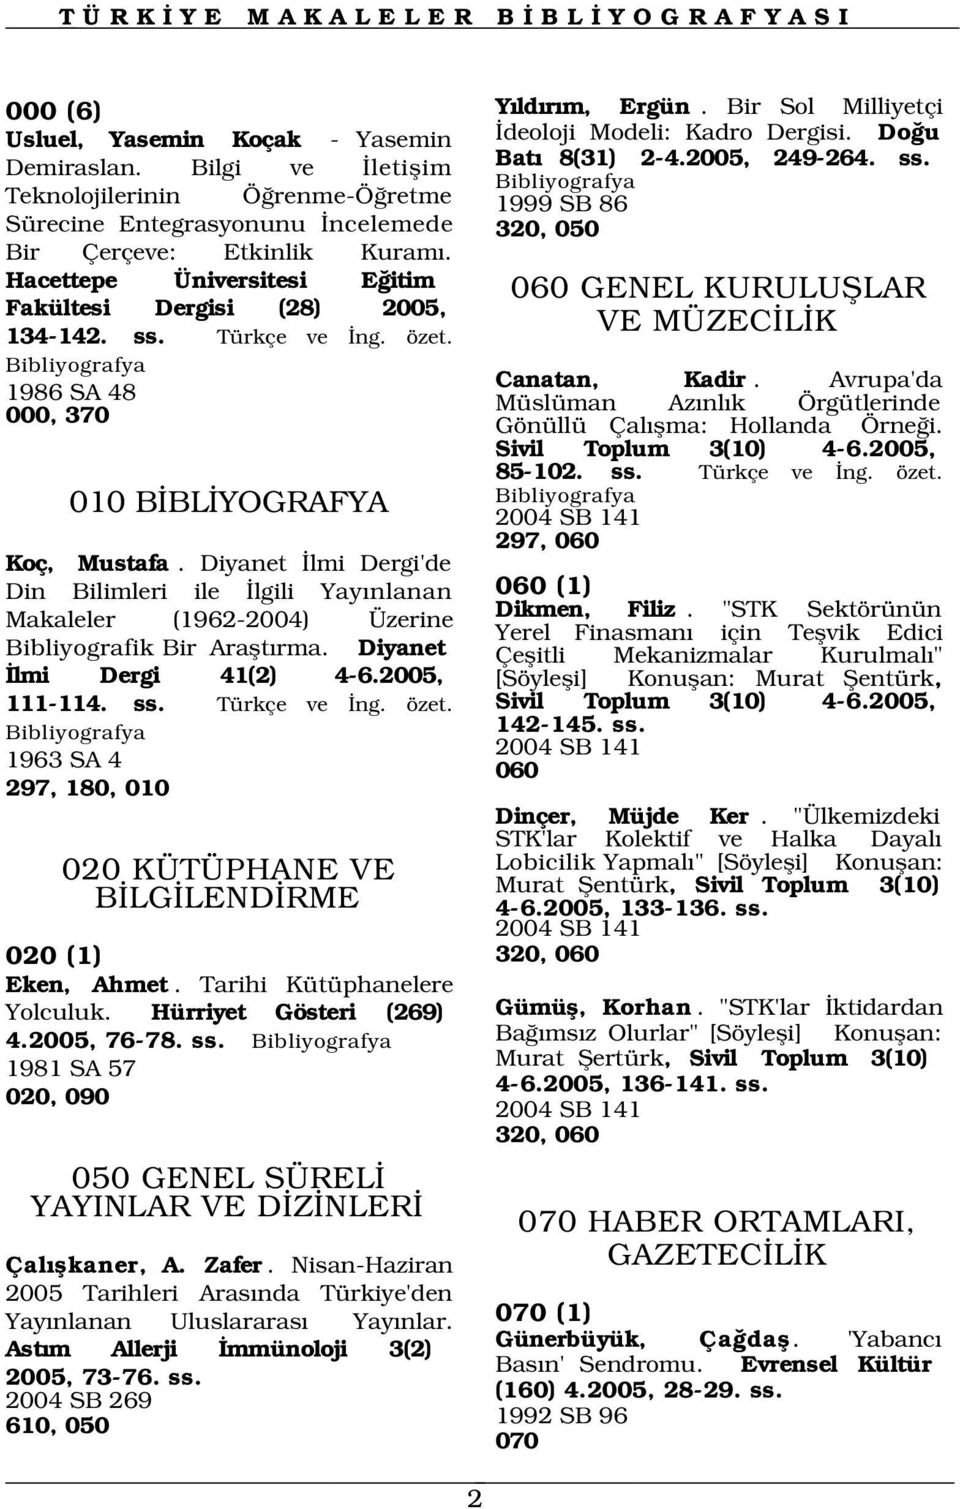 Hacettepe Üniversitesi E itim 060 GENEL KURULUfiLAR Fakültesi Dergisi (28) 2005, VE MÜZEC L K 134-142. ss. Türkçe ve ng. özet. Canatan, Kadir.